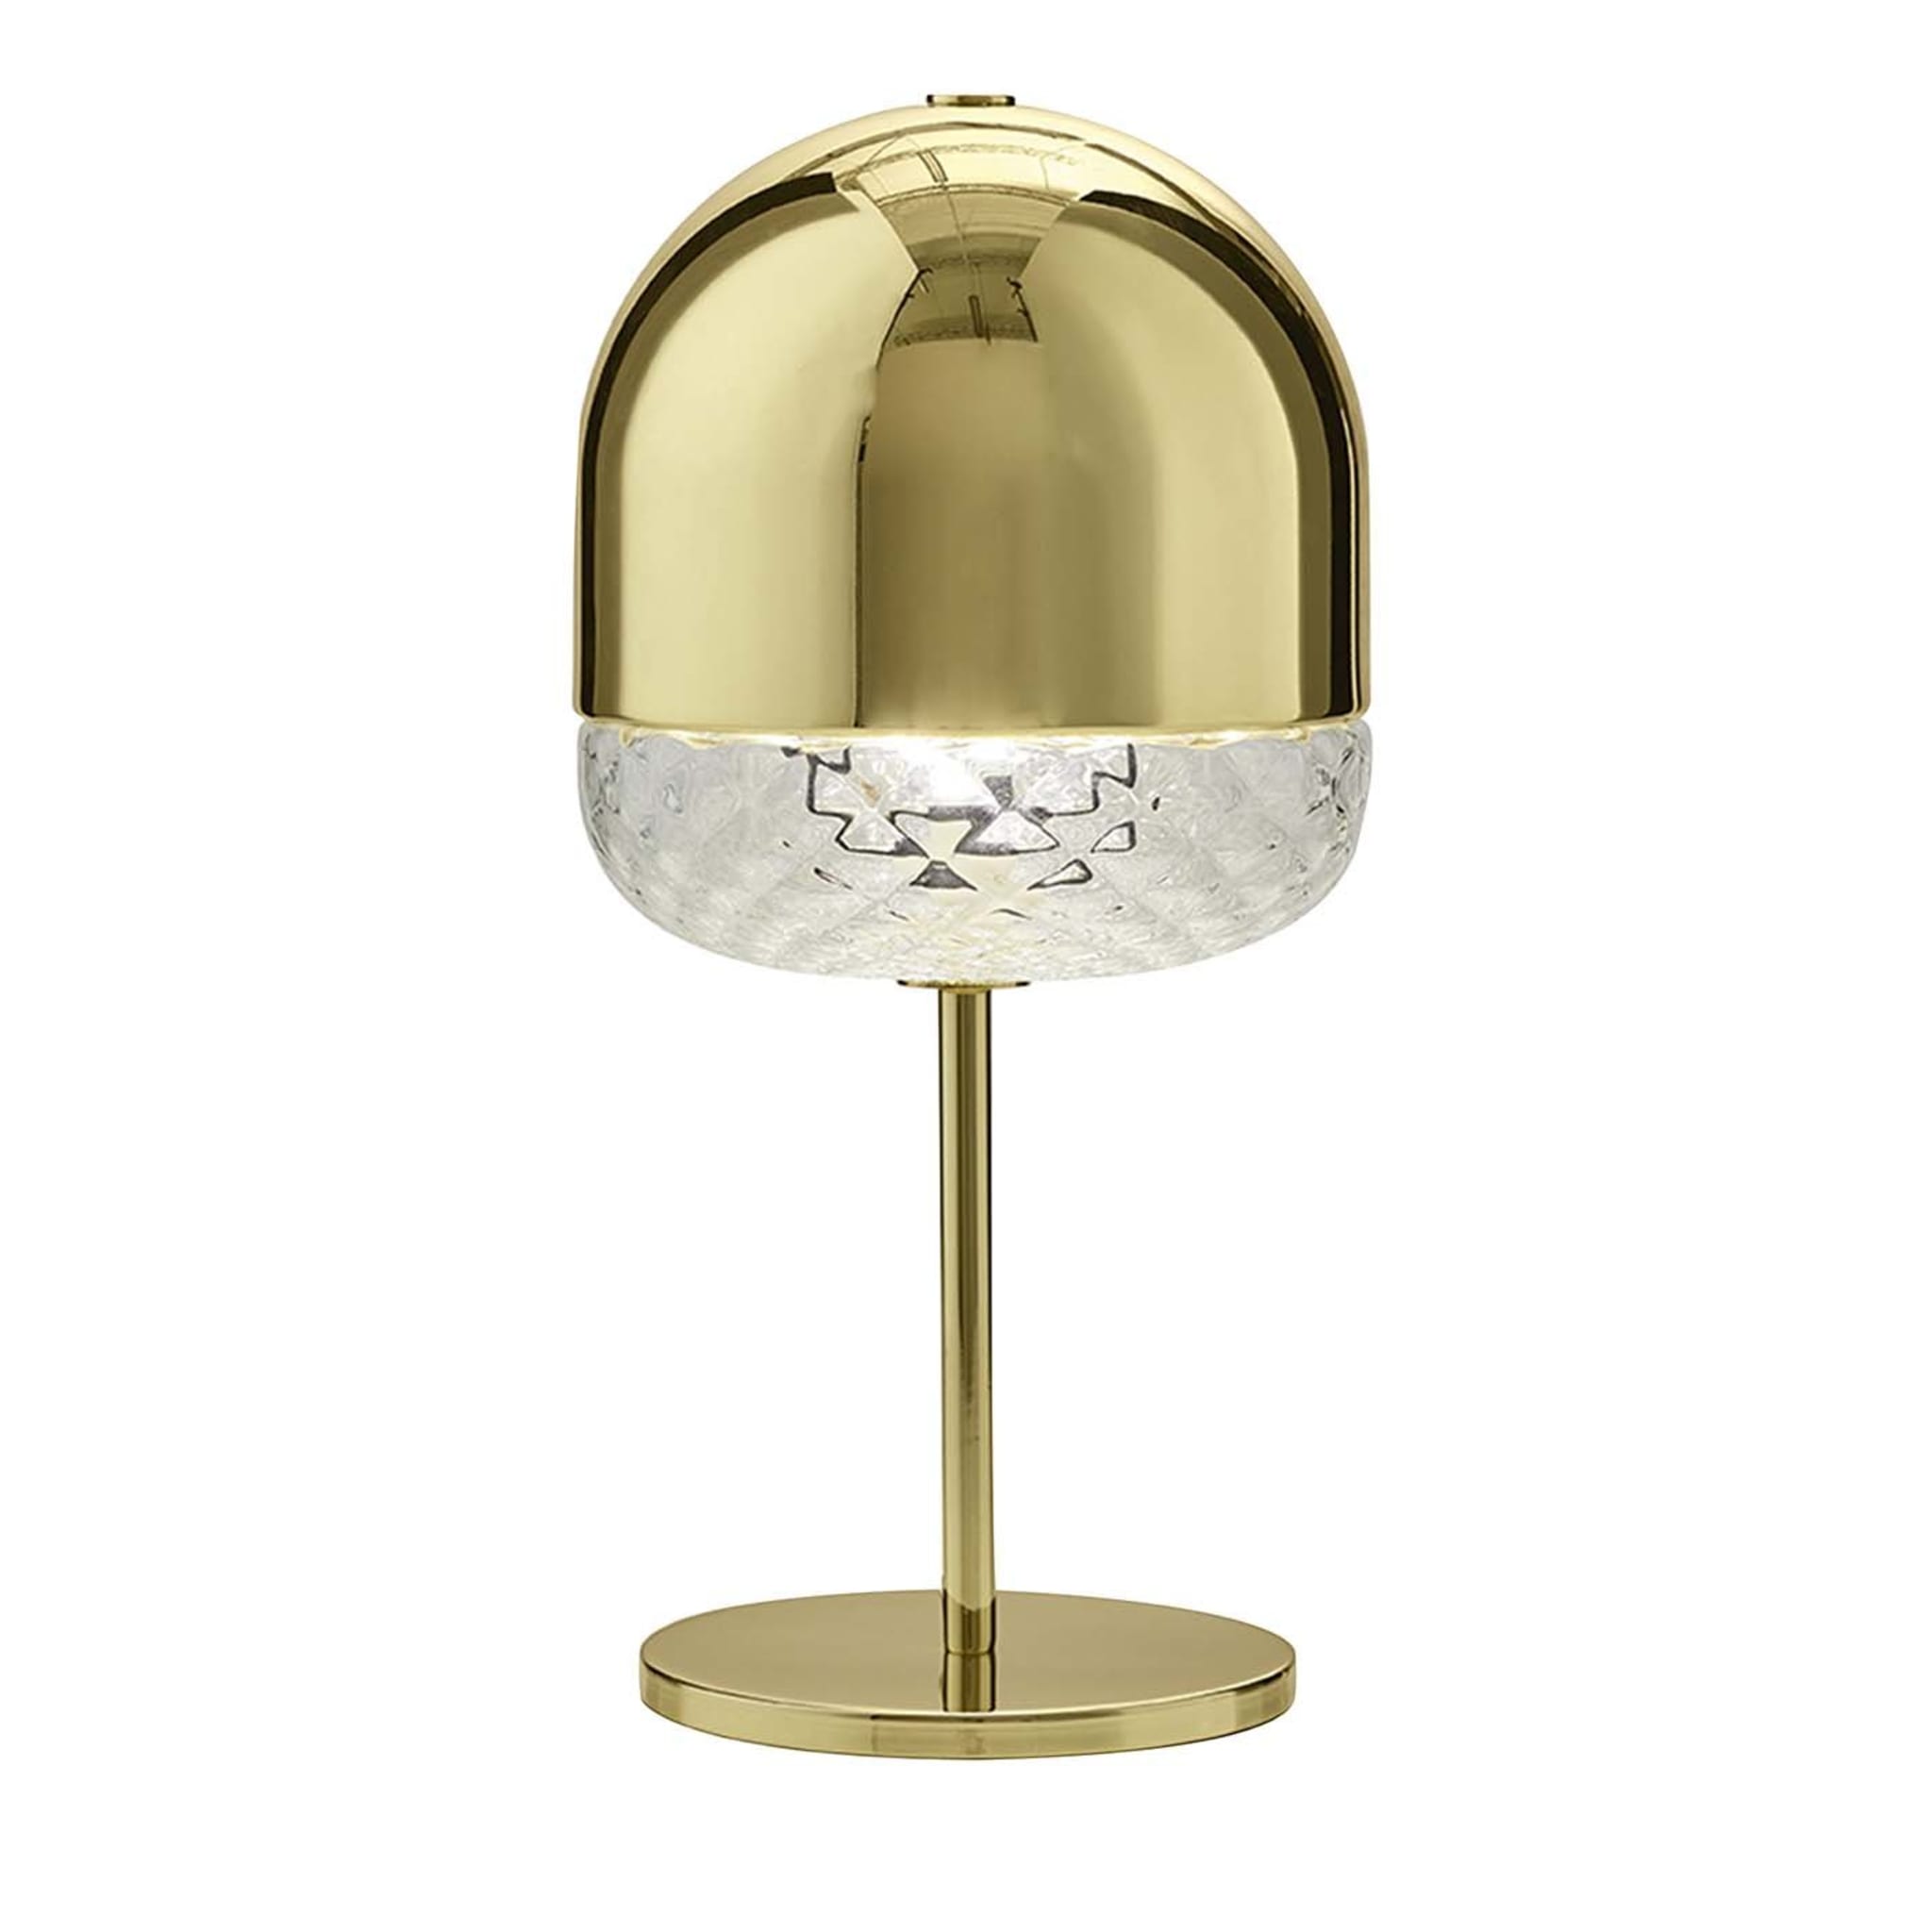 Balloton 7213 Mini Table Lamp Polished Brass by Matteo Zorzenoni - Main view